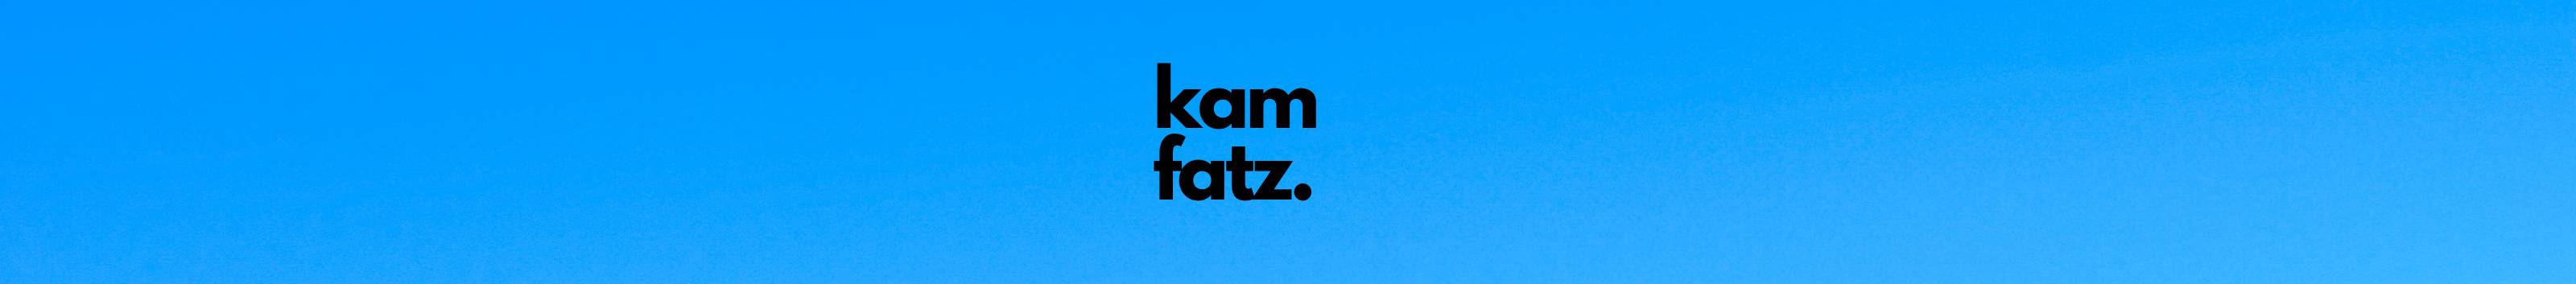 Kam Fatz のプロファイルバナー